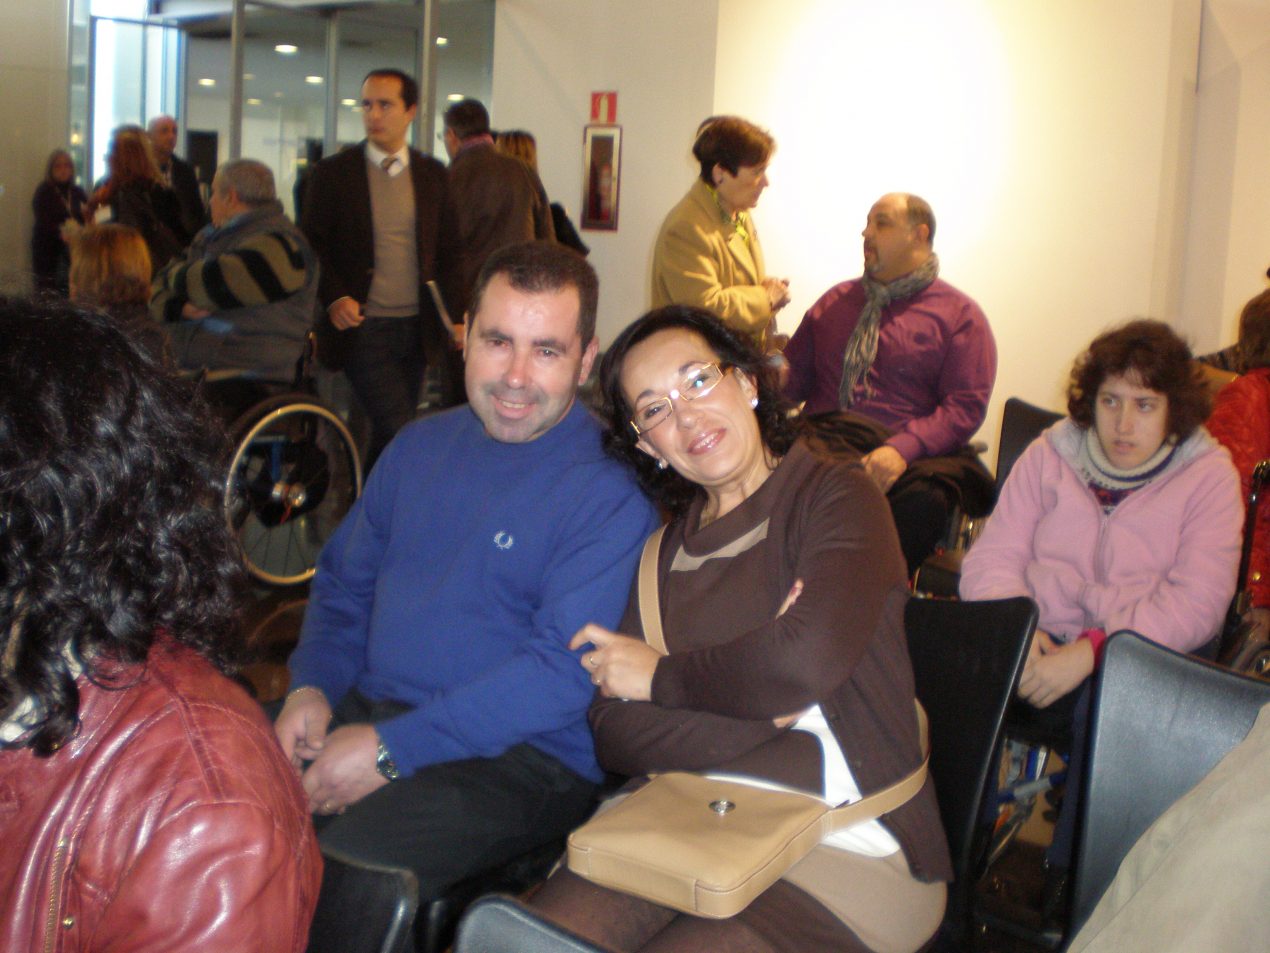 Asociación Parkinson Elche en el día Internacional de las personas con discapacidad